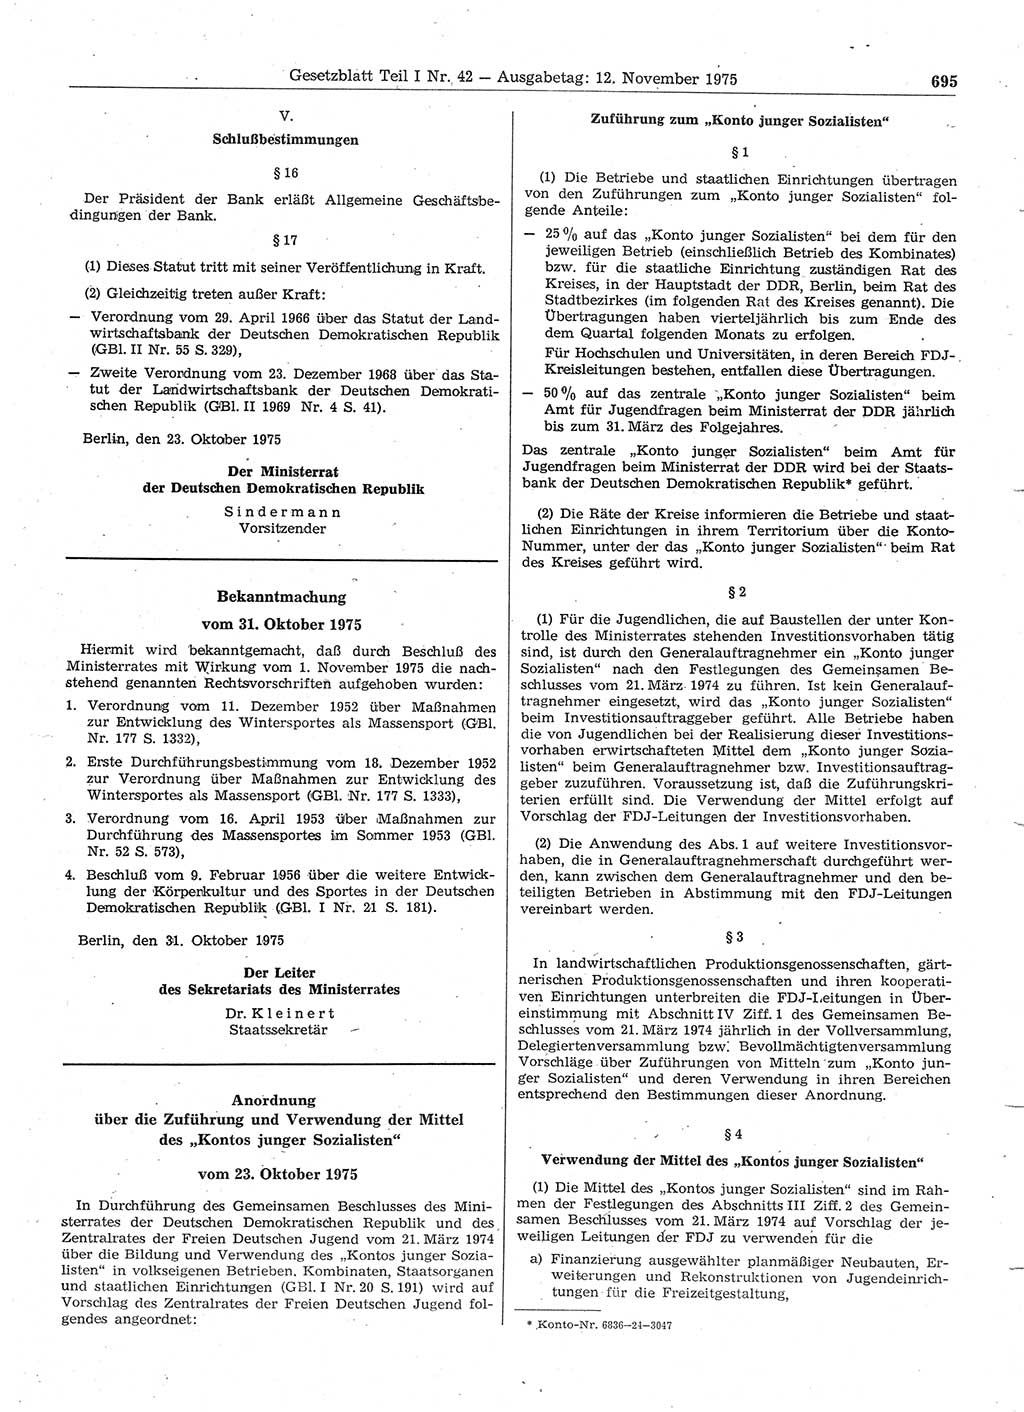 Gesetzblatt (GBl.) der Deutschen Demokratischen Republik (DDR) Teil Ⅰ 1975, Seite 695 (GBl. DDR Ⅰ 1975, S. 695)